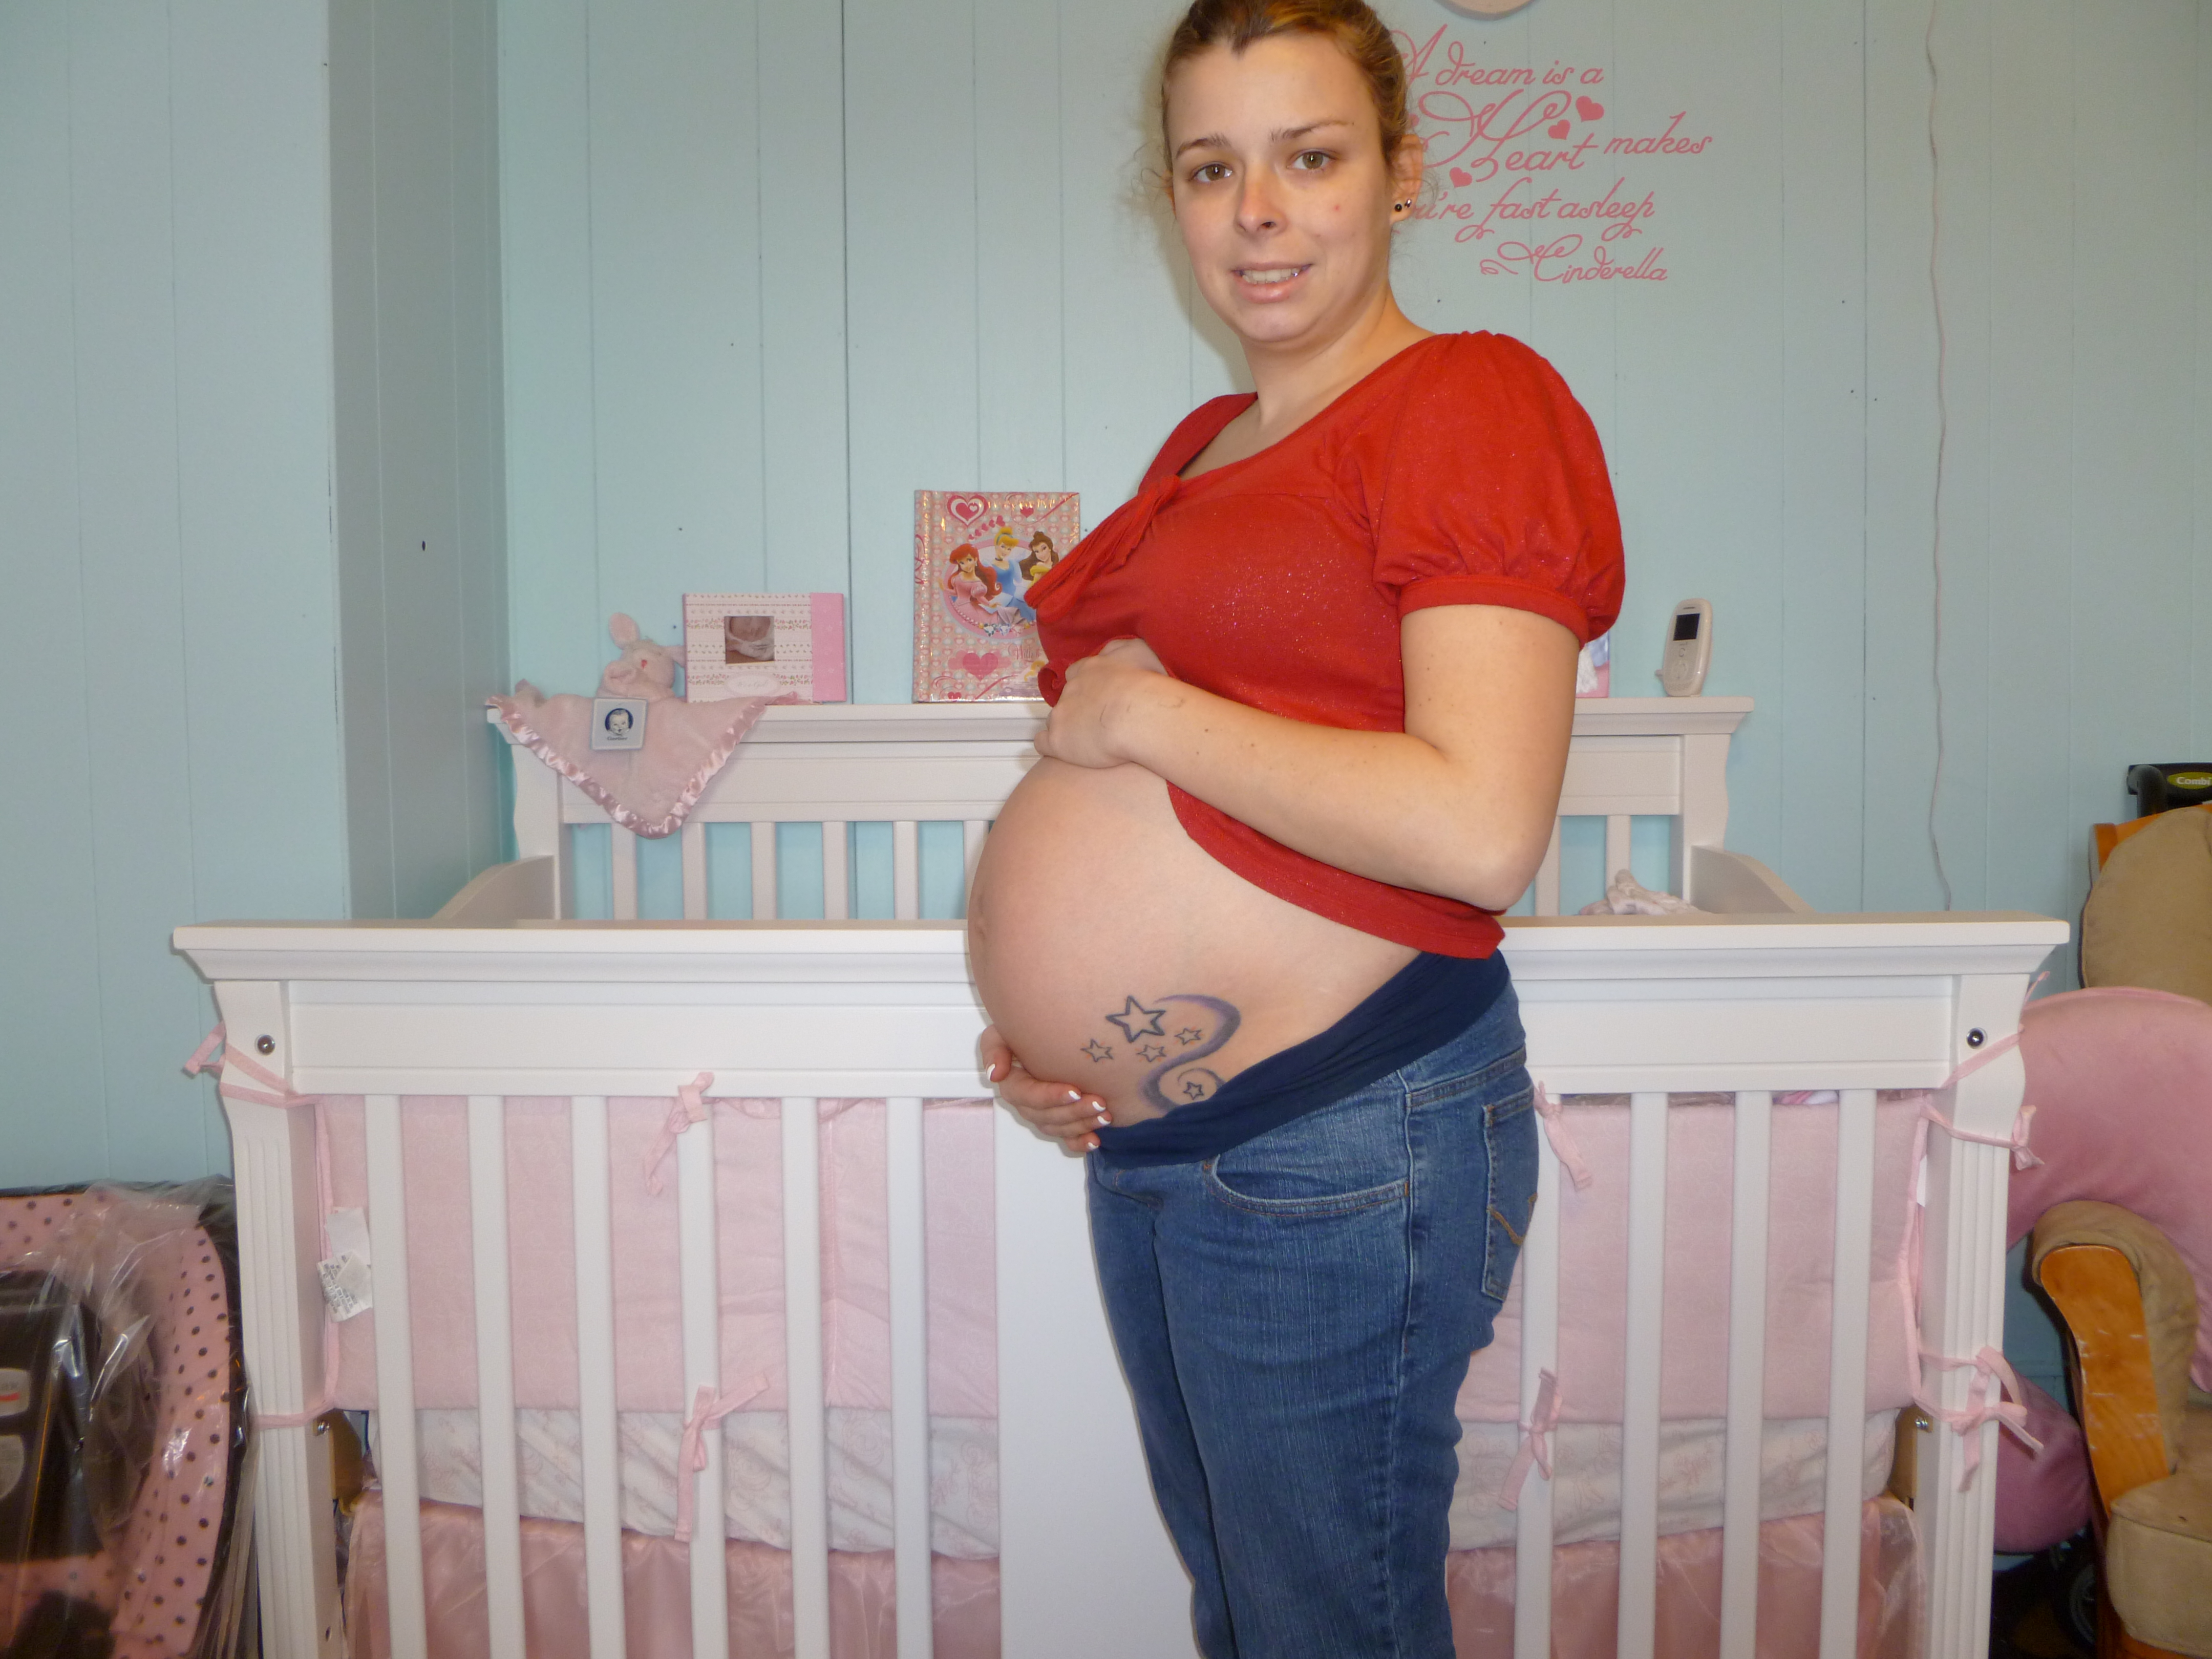 32 недели беременности сильно. Живот на 33 неделе беременности. Женщины беременные двойней. Животы беременных двойней.